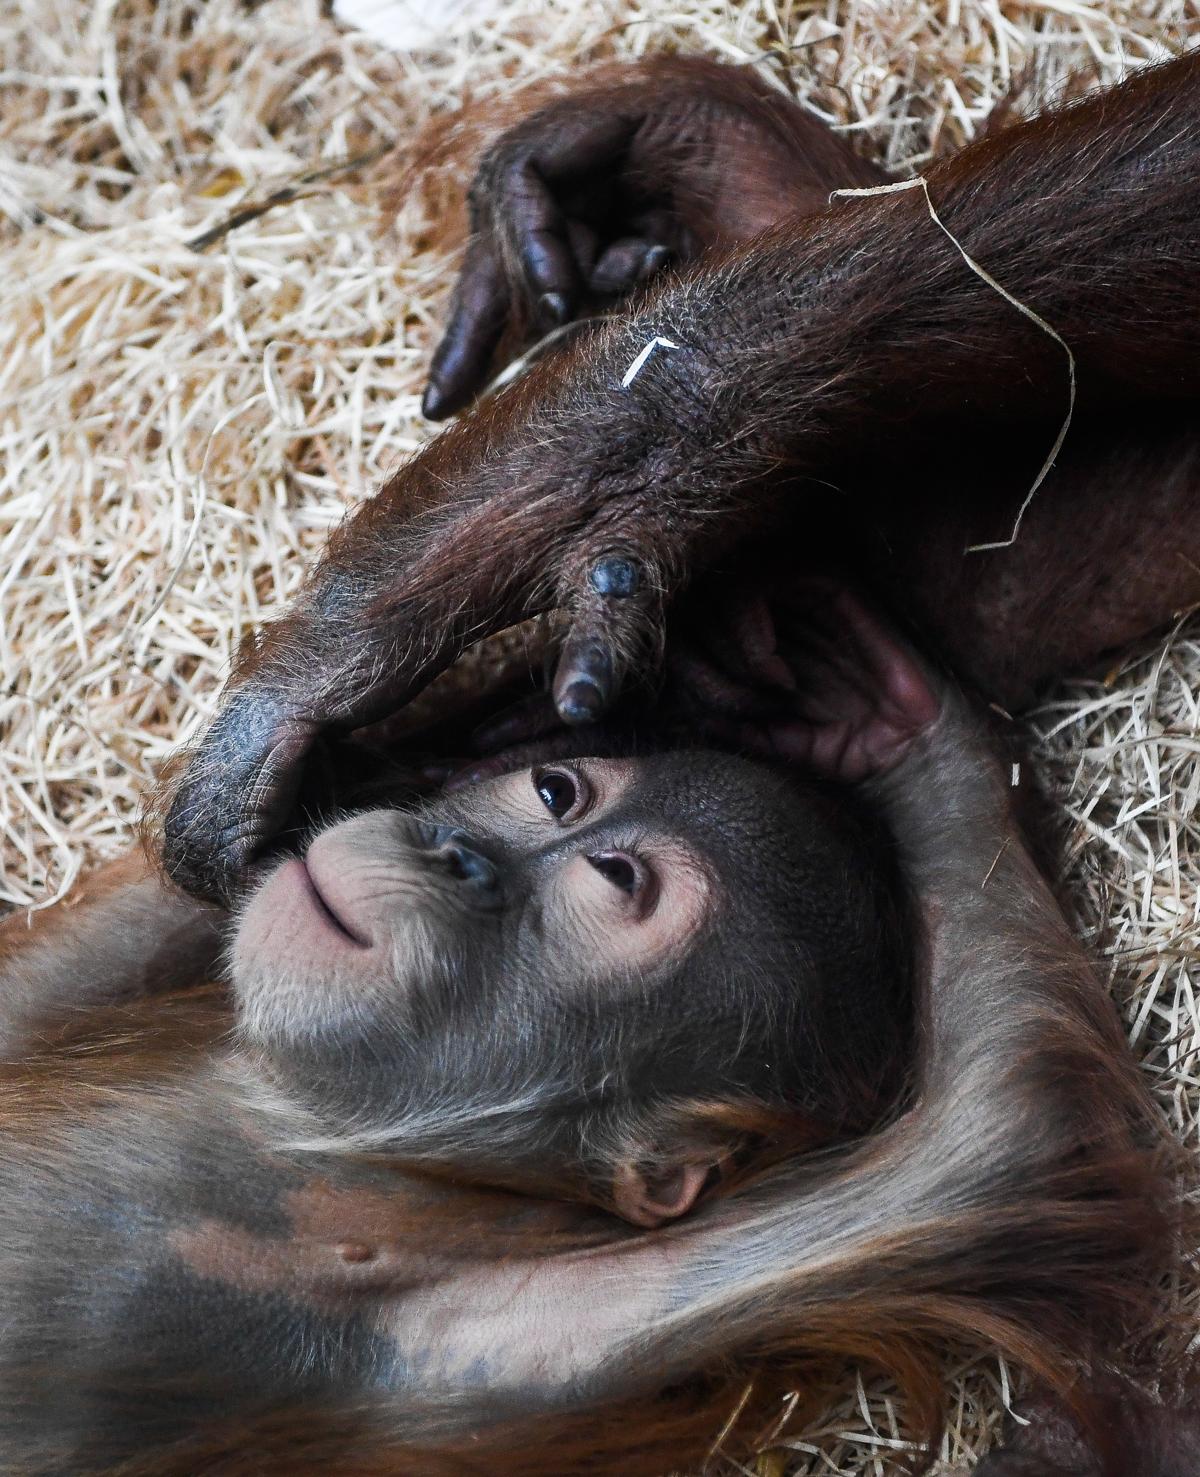 Baby orang-utan Dalai in the zoo in Dresden